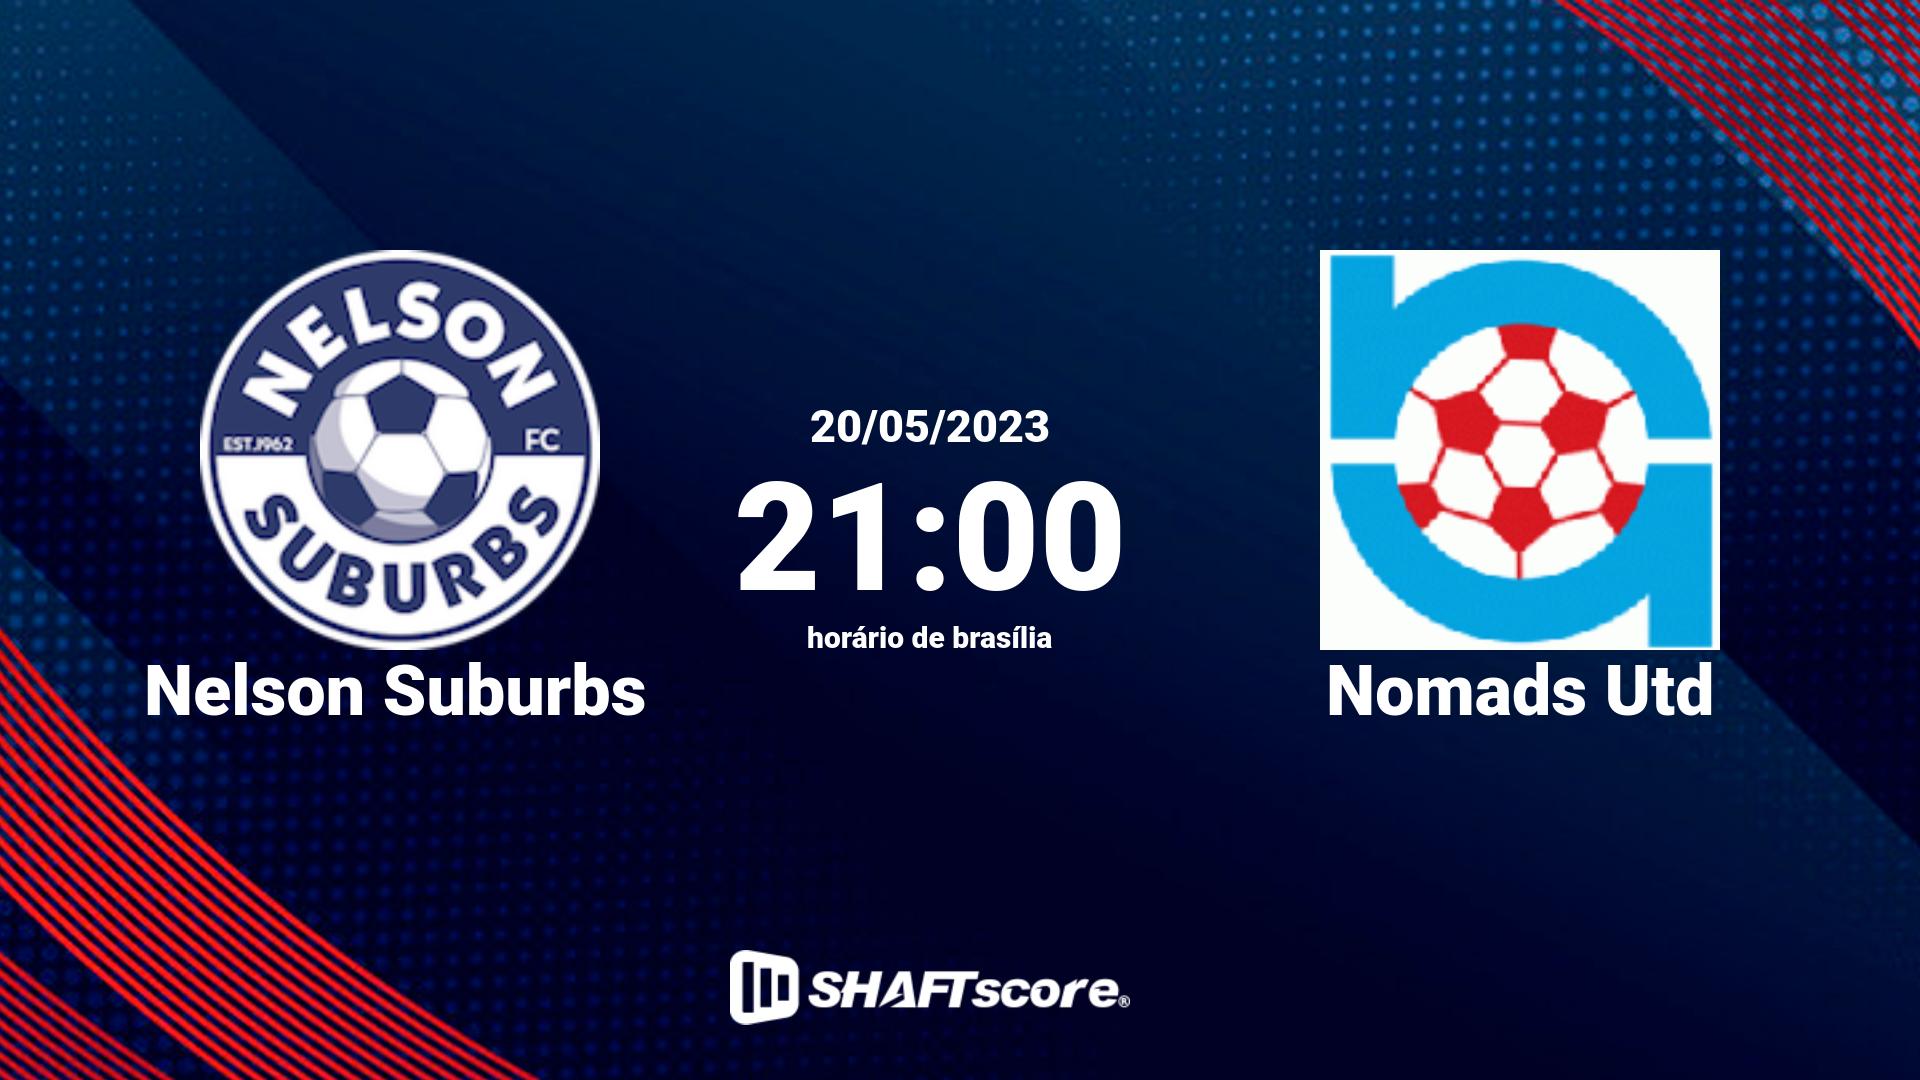 Estatísticas do jogo Nelson Suburbs vs Nomads Utd 20.05 21:00